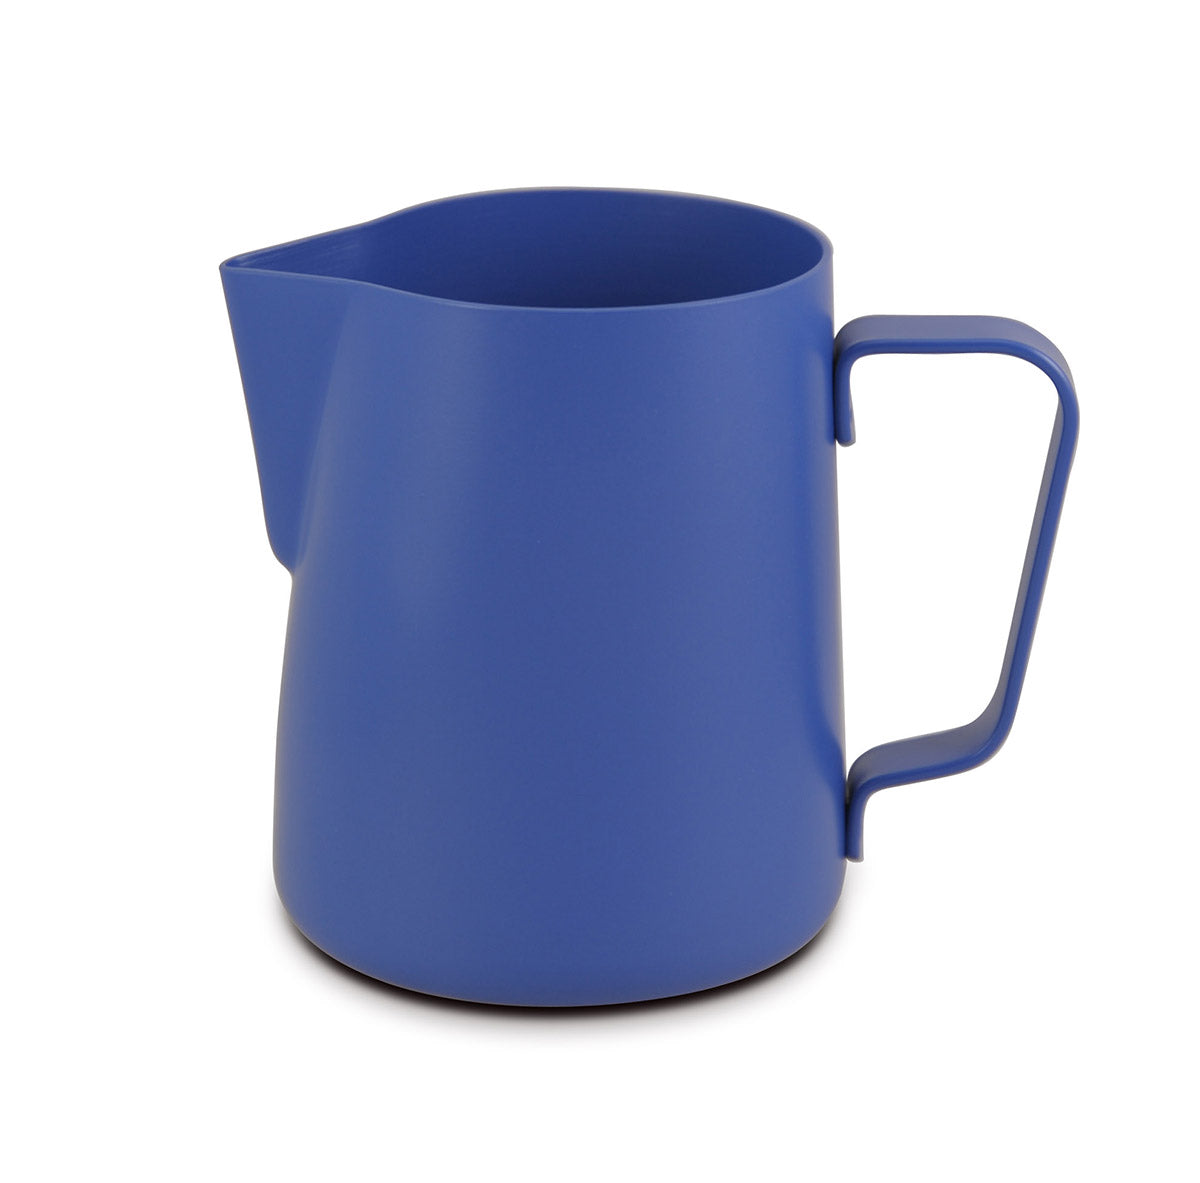 Lattiera per cappuccino in acciaio inox | Colore blu | Capacità 600 ml